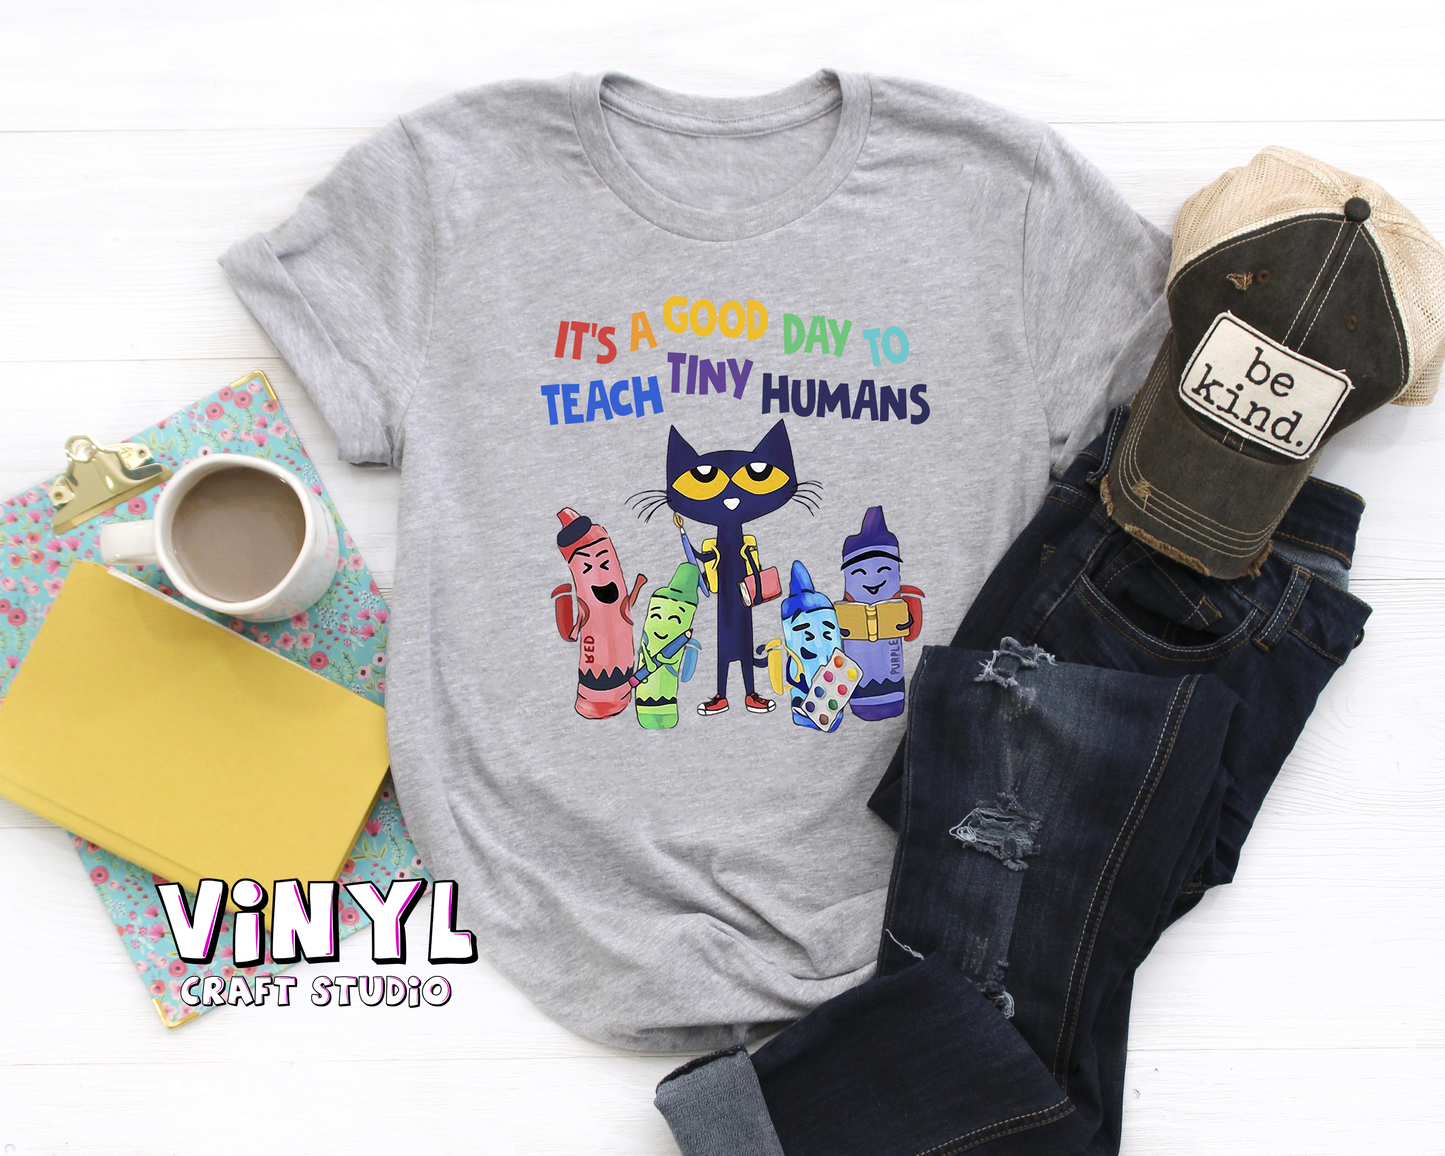 196.) Teach Tiny Humans